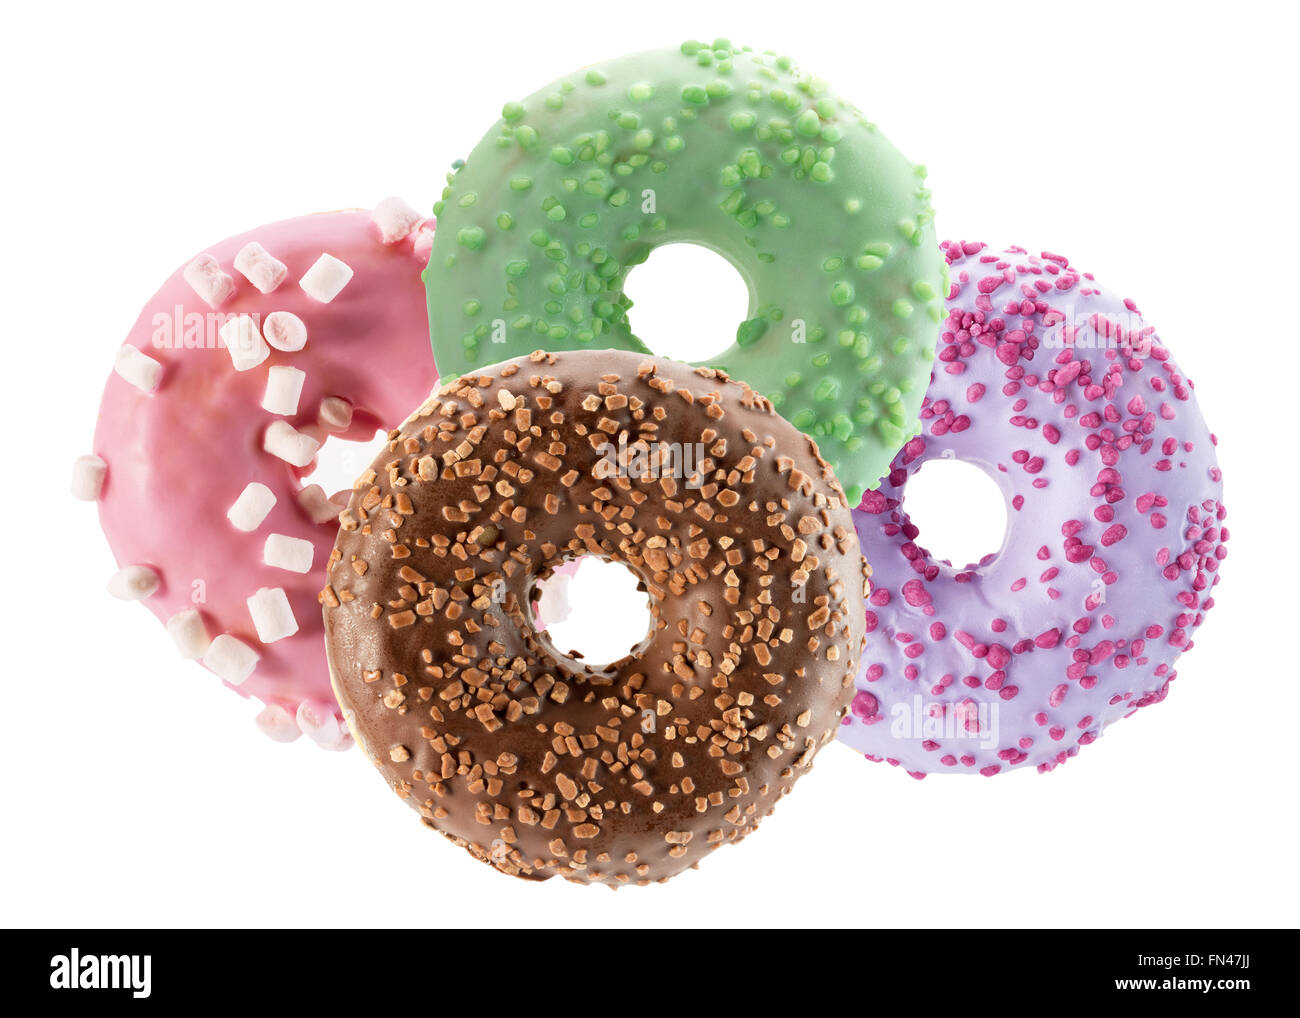 Donuts immagini e fotografie stock ad alta risoluzione - Alamy